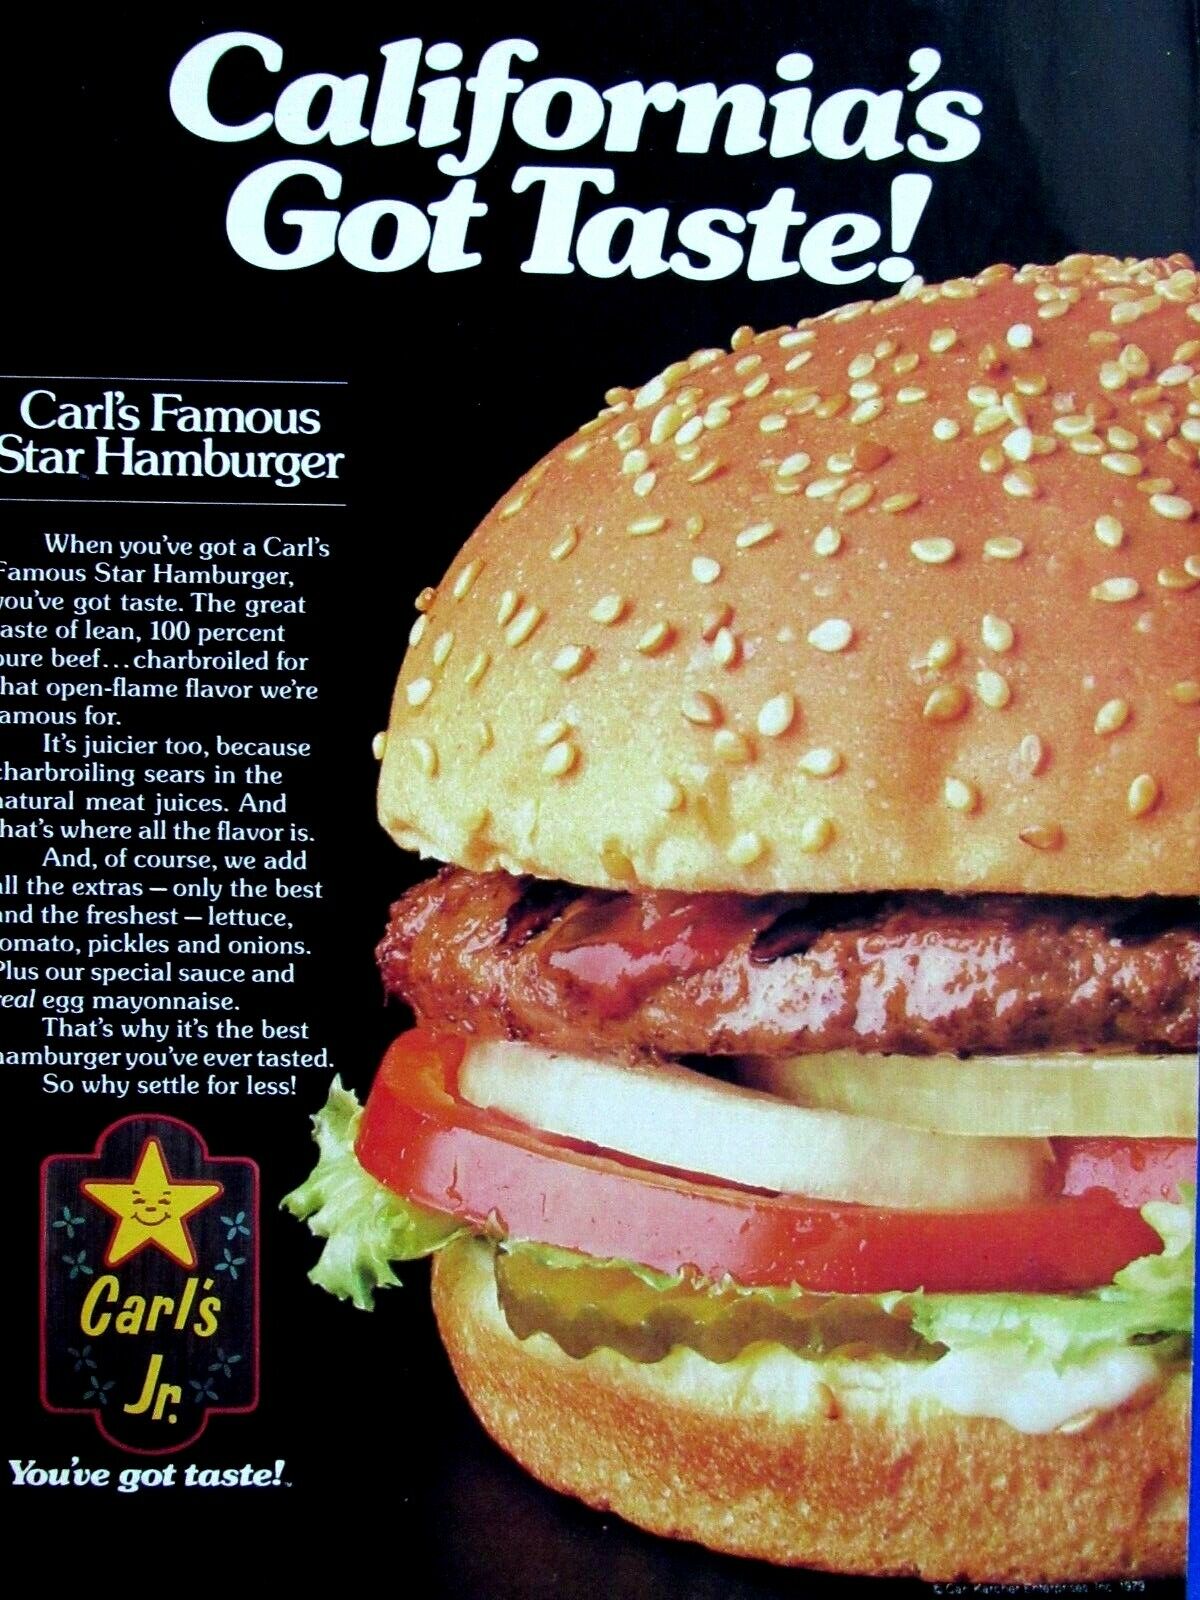  1979 Carl\'s Jr. Star Hamburger California\'s Got Taste Original Print Ad 8.5x11\